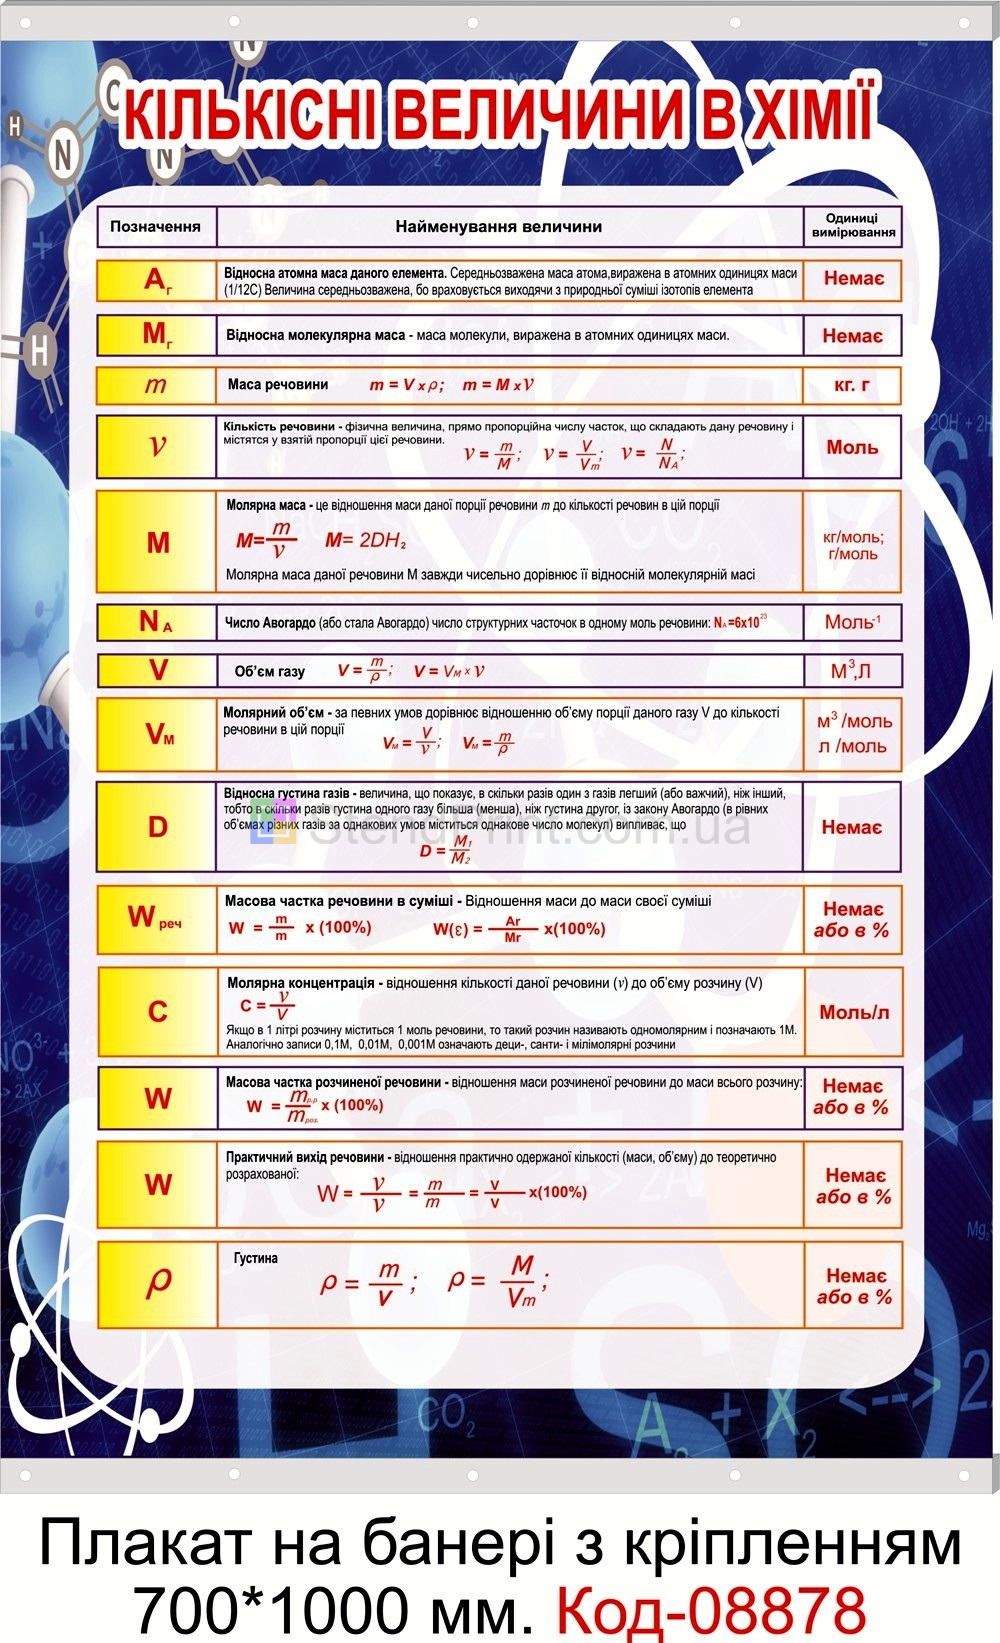 Кількісні величини в хімії плакат на банері з направляючими